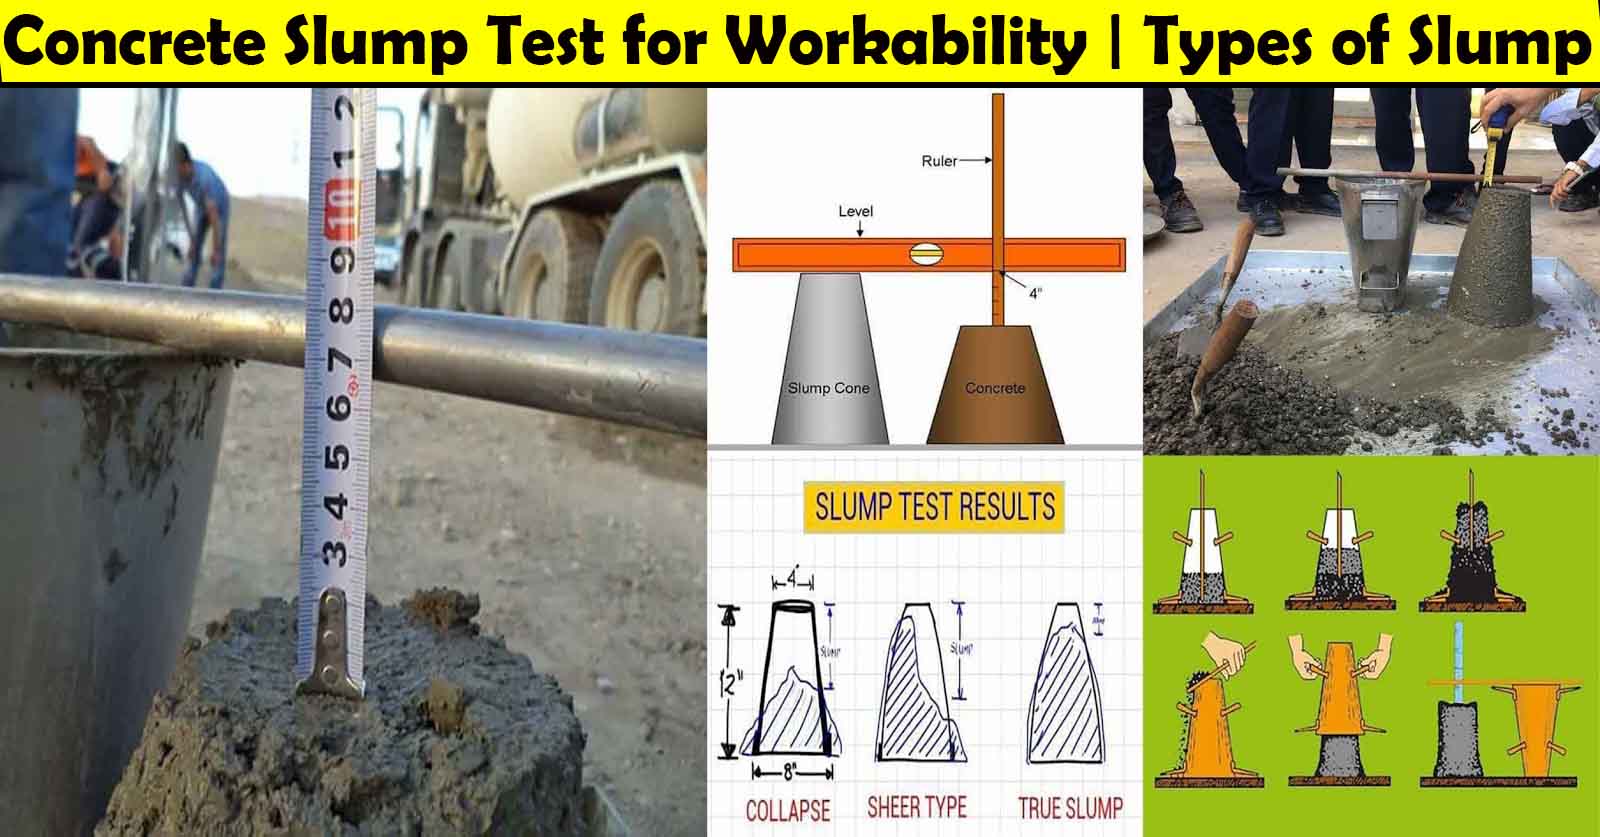 Concrete Slump Test for Workability, Slump Test of Concrete Values, What is Slump in Concrete, Types of Concrete Slump, Slump Cone Test Formula, Slump Test Procedure pdf, Concrete Slump Range, slump, concrete, test, cone, workability, mold, mix, shear, civil, diameter, mixes, rod, standards, collapse, sample, ASTM, layer, range, concrete slump range, what is slump in concrete, slump test pdf, slump test procedure pdf, types of slump test, concrete slump test frequency, slump cone size, concrete slump test procedure, concrete slump test australian standard, concrete slump test uk, concrete slump test Australia, concrete slump test results, concrete slump test is code, concrete slump test equipment, concrete slump test video, workability of concrete slump test, self compacting concrete slump test, astm concrete slump test, how to do a concrete slump test, how to check concrete slump test, why is concrete slump test carried out, types of concrete slump test, concrete workability slump test, concrete slump testing equipment, slump test of concrete values, slump test of concrete pdf, slump test pdf, slump test of concrete is a measure of its, slump test of concrete procedure, slump test of concrete values, slump test of concrete is code, slump test of concrete pdf, slump test of concrete is carried out to determine, slump test of concrete in hindi, slump test of concrete is used to measure, slump test of concrete results, the slump test of concrete is used to measure its, how to do slump test of concrete, tools used for slump test of concrete, method of slump test of concrete, test cubes, concrete tests, concrete sample testing, slump test of concrete, concrete testing procedures, concrete testing laboratory, concrete strength test, compression test of concrete, concrete testing equipment, standard concrete mix, concrete testing lab, concrete testing method, concrete slump, concrete sample, concrete tests on site, concrete block testing, engineering concrete, mixing concrete ratio, prepared concrete, concrete cube test, concrete testing method, concrete slump, lightweight cement, concrete tests, core test for concrete, concrete mix ratio calculator, portland cement mix ratio, strength test of concrete, concrete mix formula, reinforcement in concrete, cement layer, aggregate tests, setting of concrete, concrete mix ratio, concrete aggregate, cement steps, material for concrete, reinforced cement concrete, cement pumps,